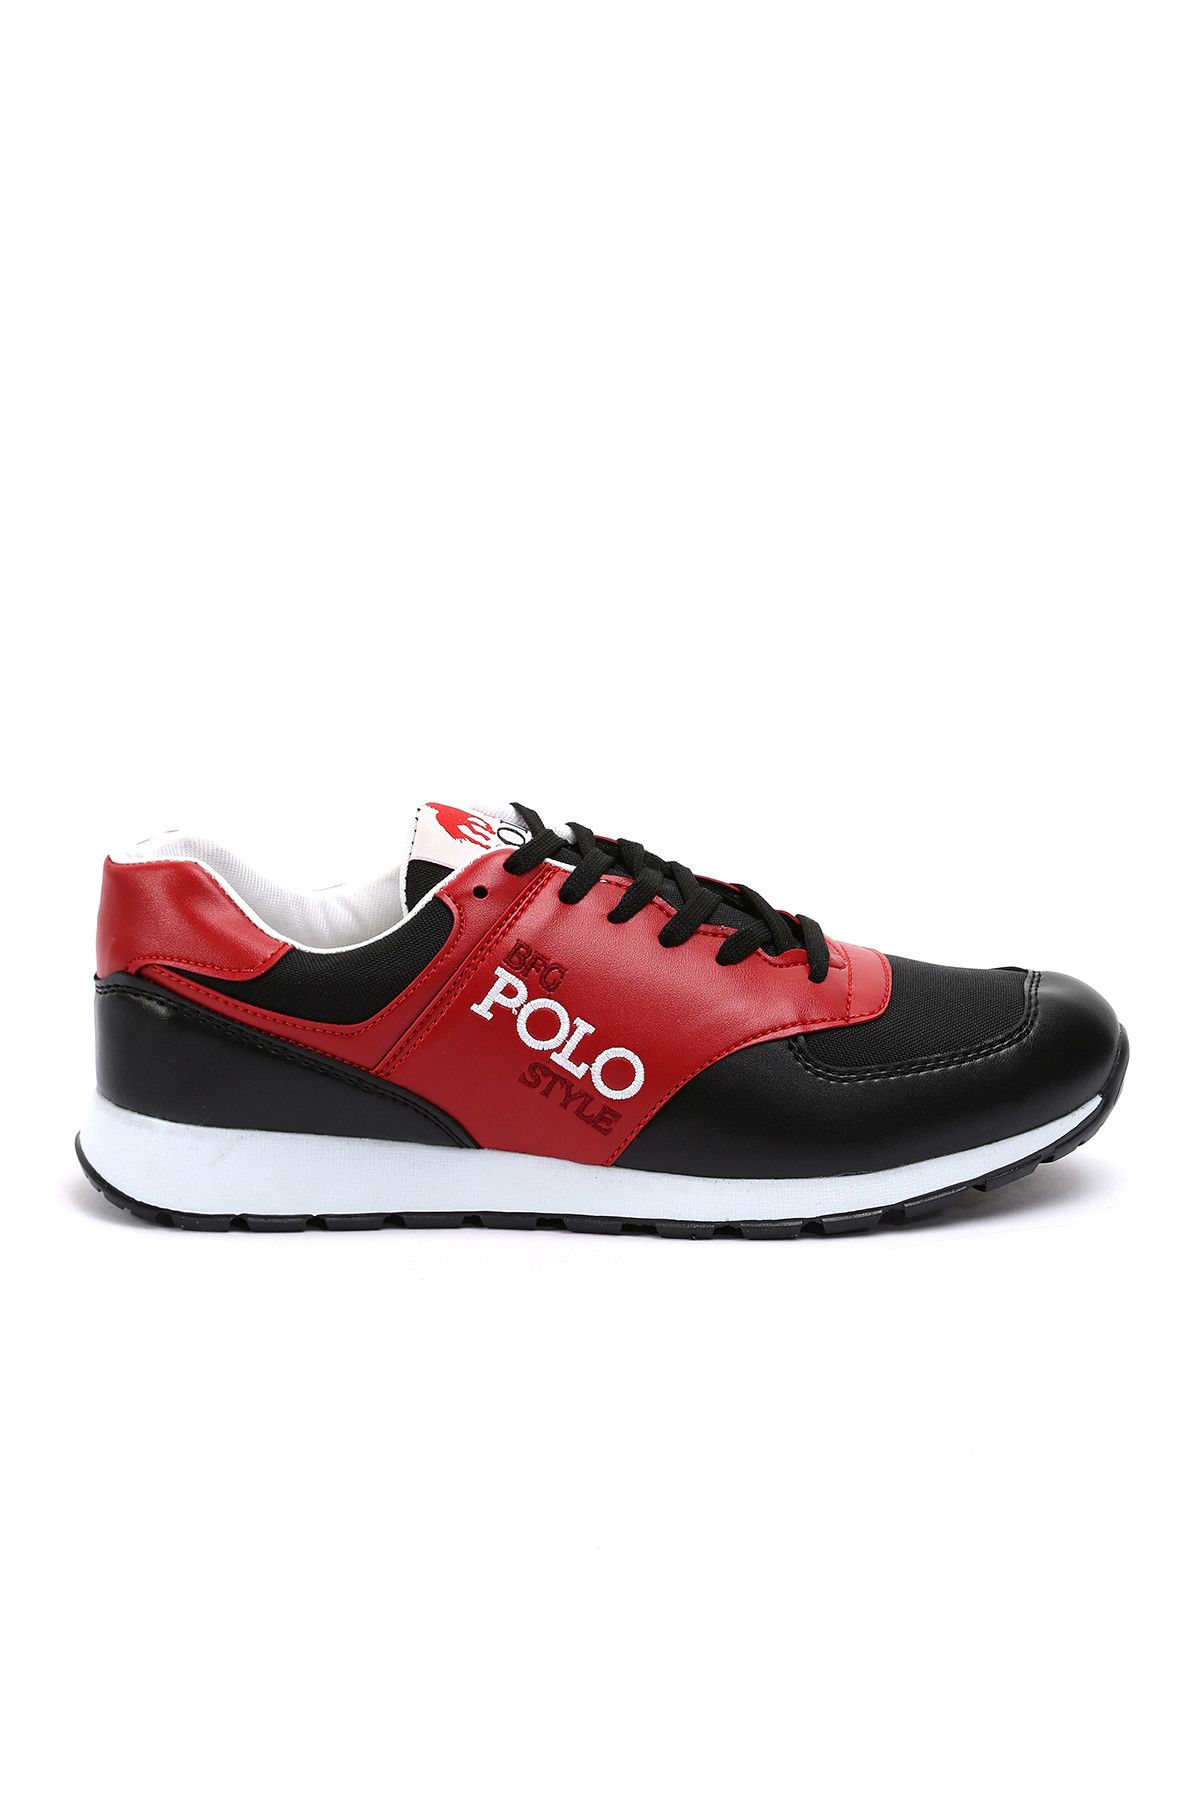 B.F.G POLO STYLE Siyah Kırmızı Erkek Ayakkabı 559-7-Ym0754